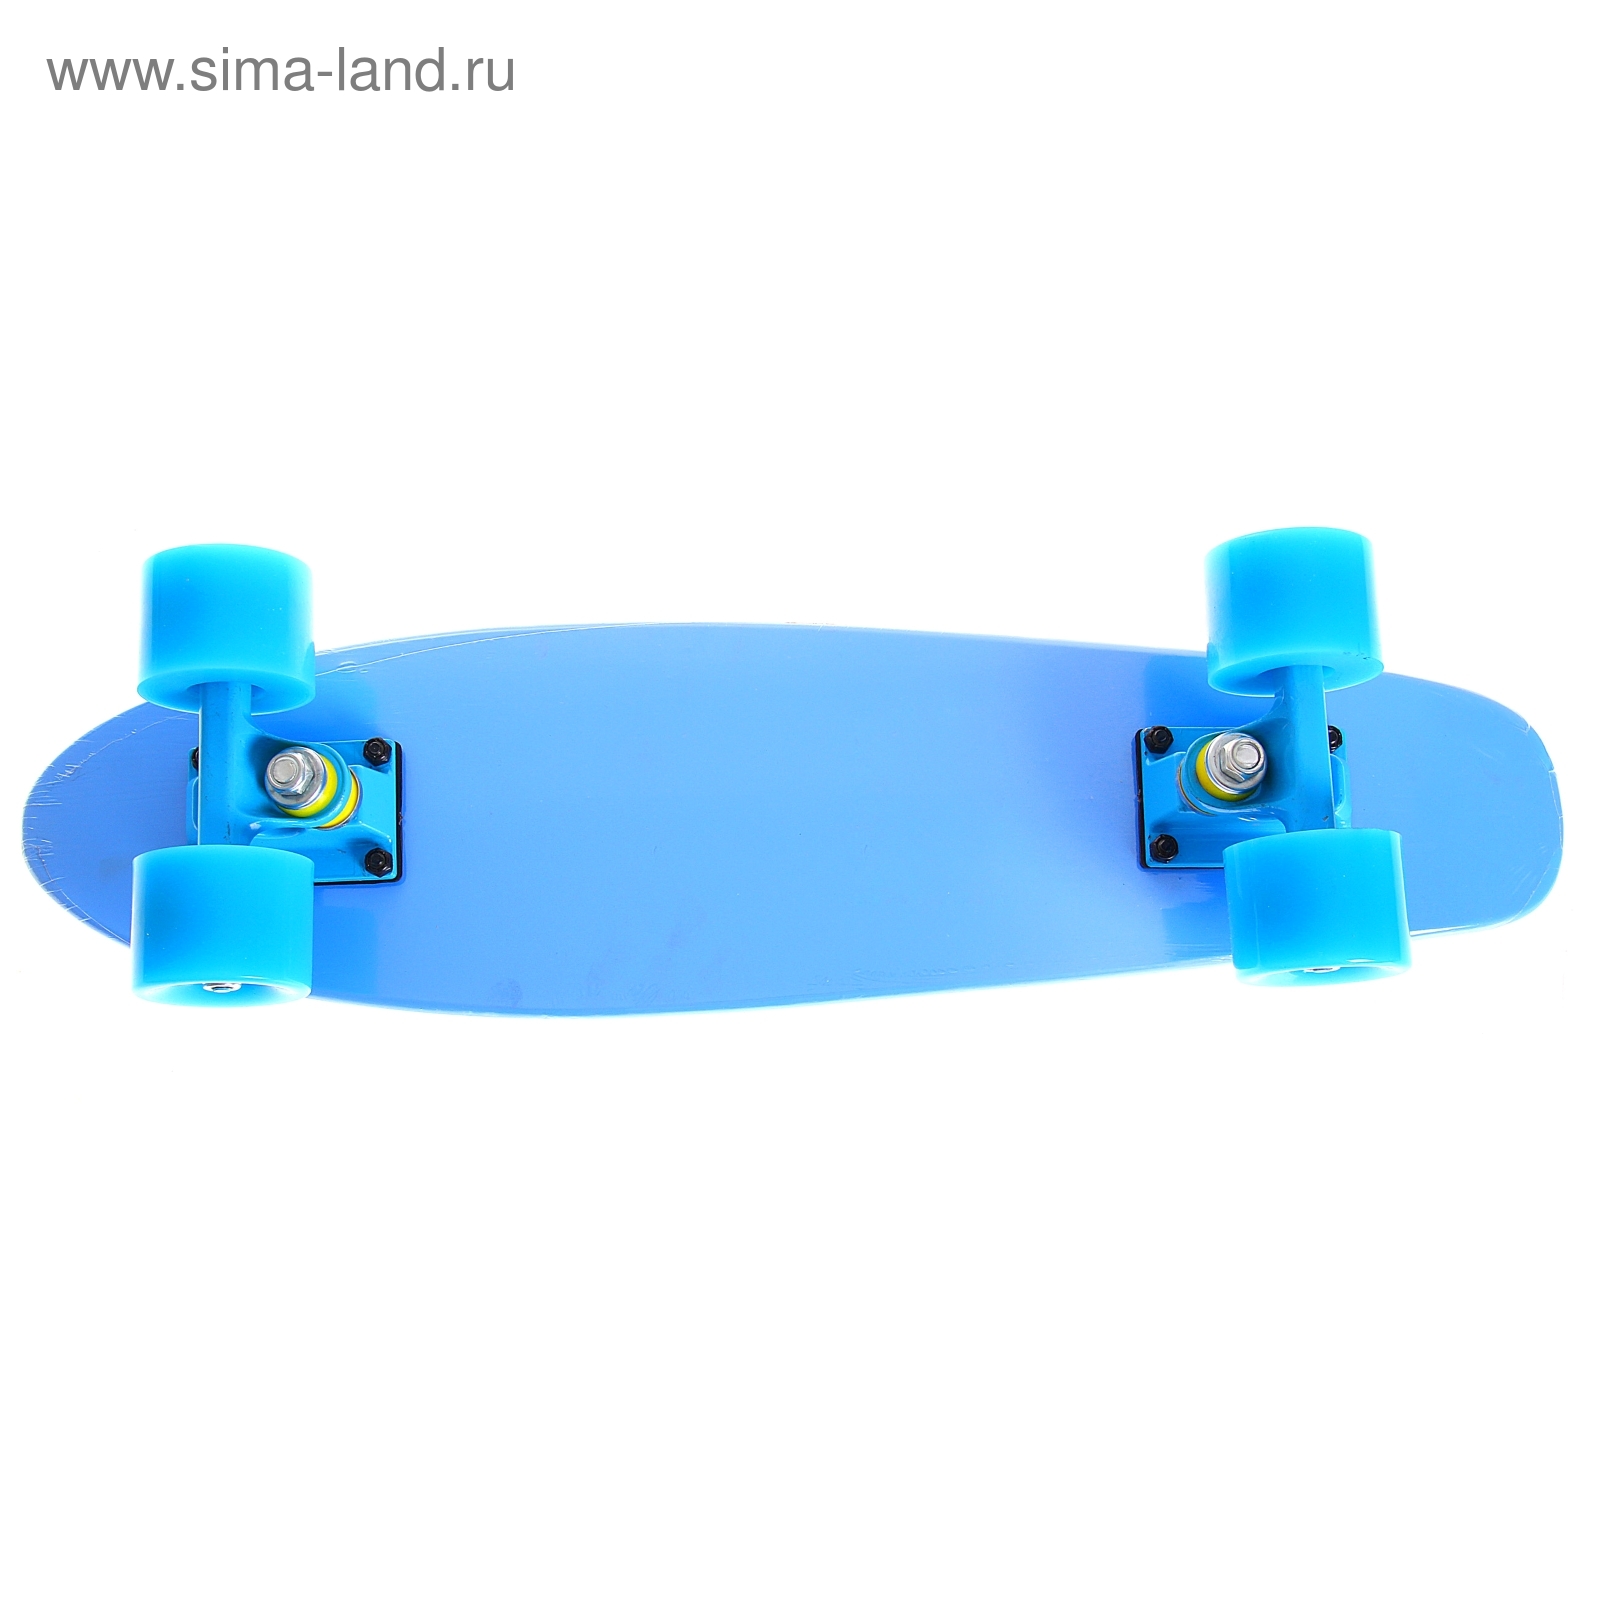 Скейтборд с разноцветными колёсами, PU d= 57*45 мм, алюминиевая рама, МИКС